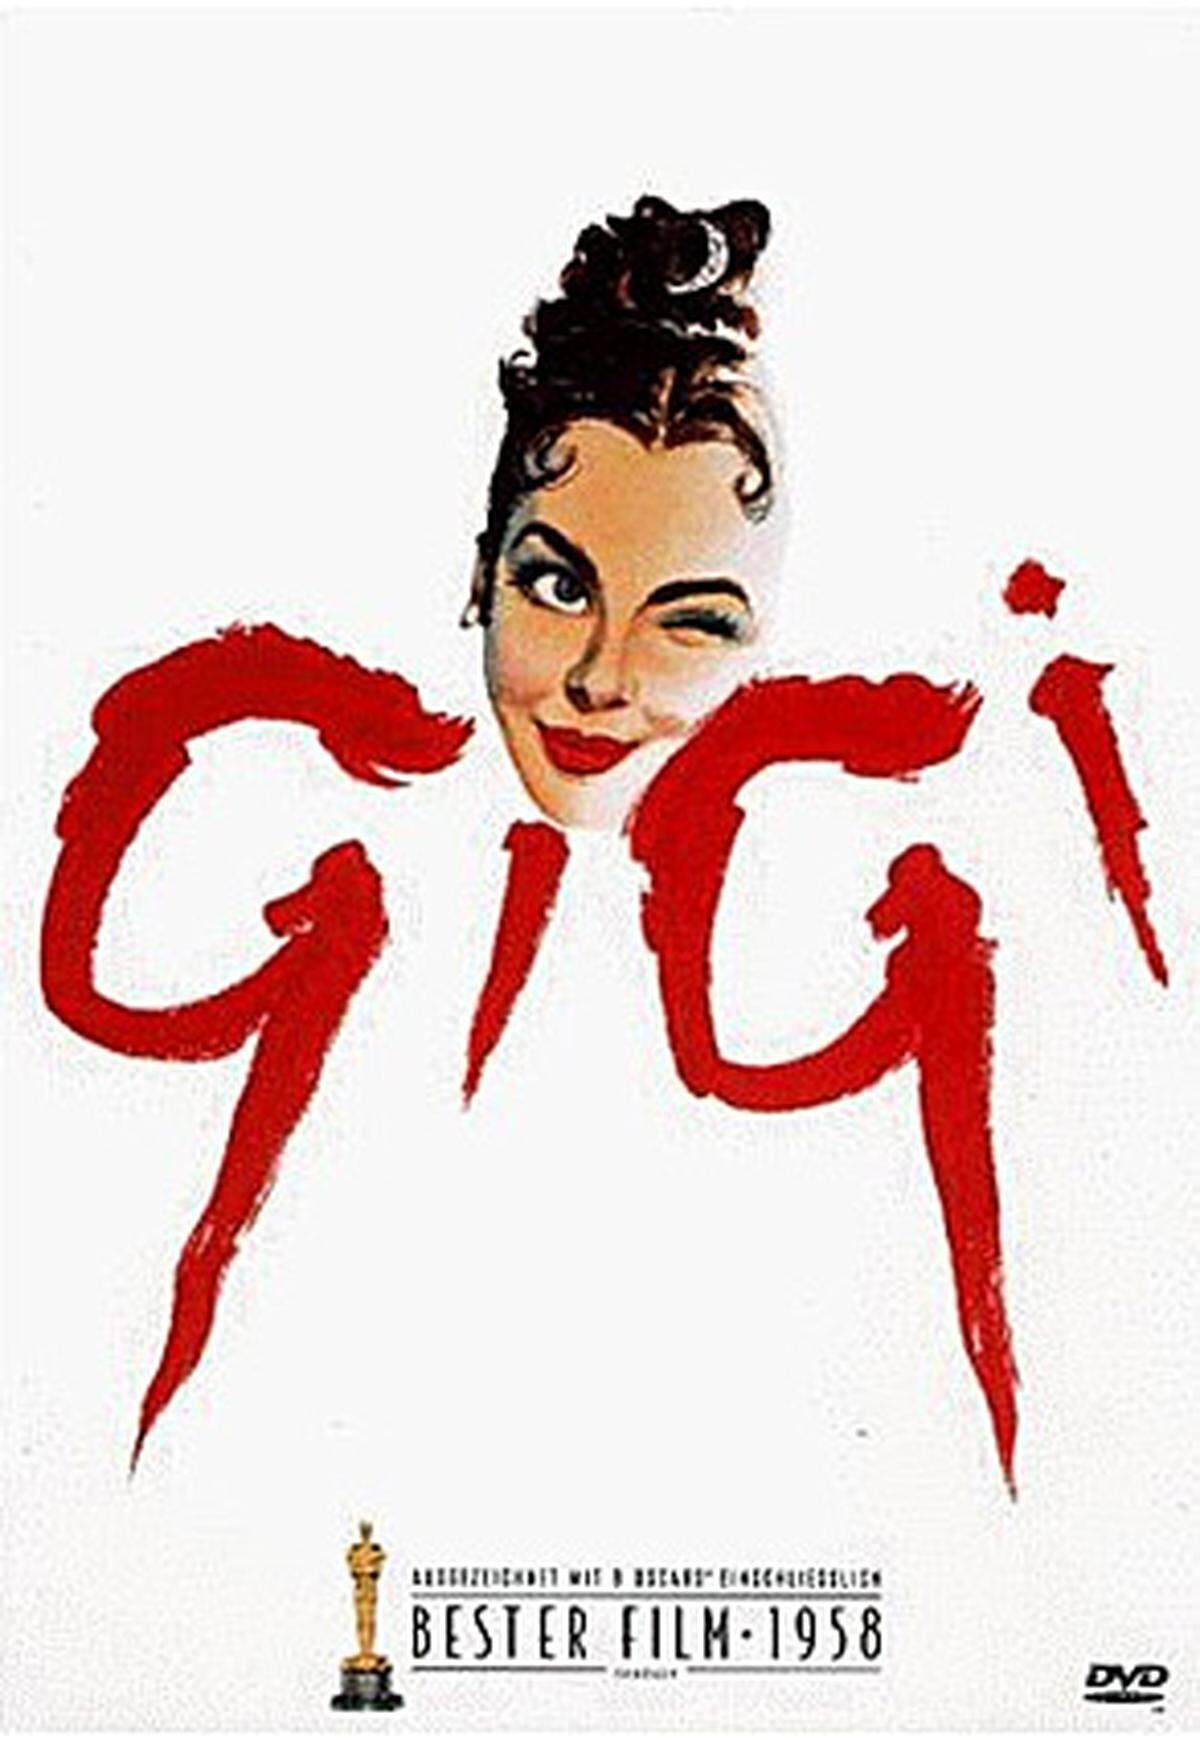 Erfolg auf ganzer Linie: Vincente Minnellis Muscialfilm "Gigi" räumte 1959 ebenfalls mit neun Nominierungen auch neun Oscars ab.